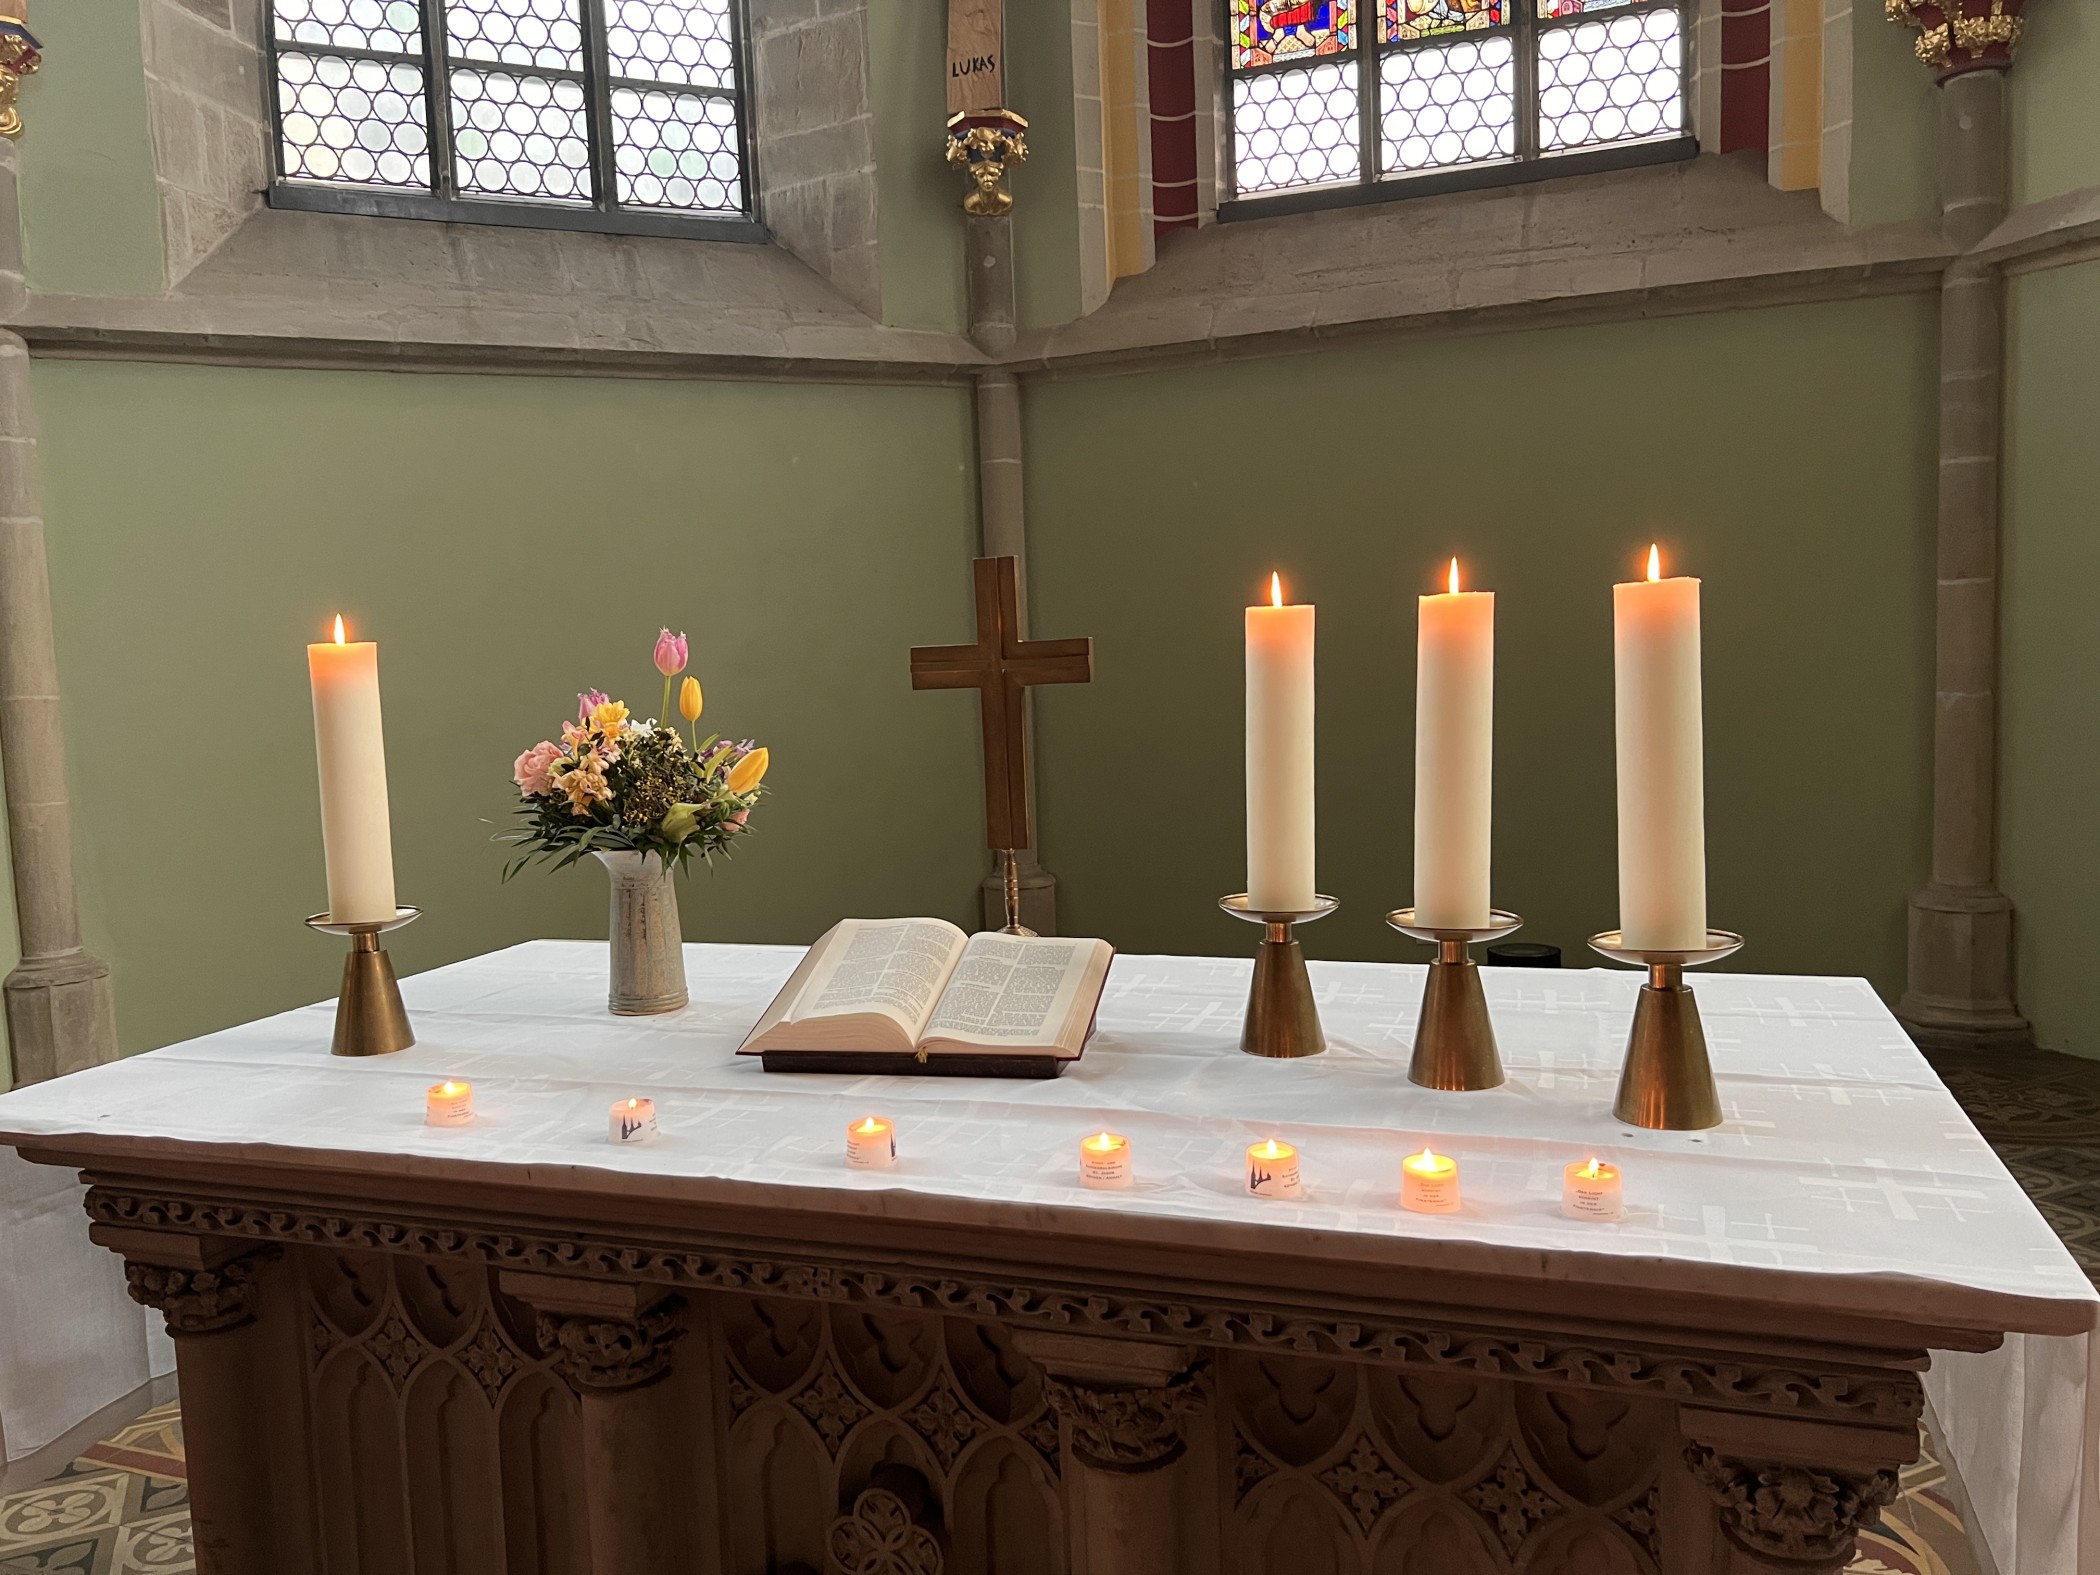 Bild von einem Altar, darauf stehen von links nach rechts: eine Kerze, ein Blumenstrauß, ein Kreuz und drei Kerzen. Davor stehen brennende Teelichter auf dem weißen Tischtuch